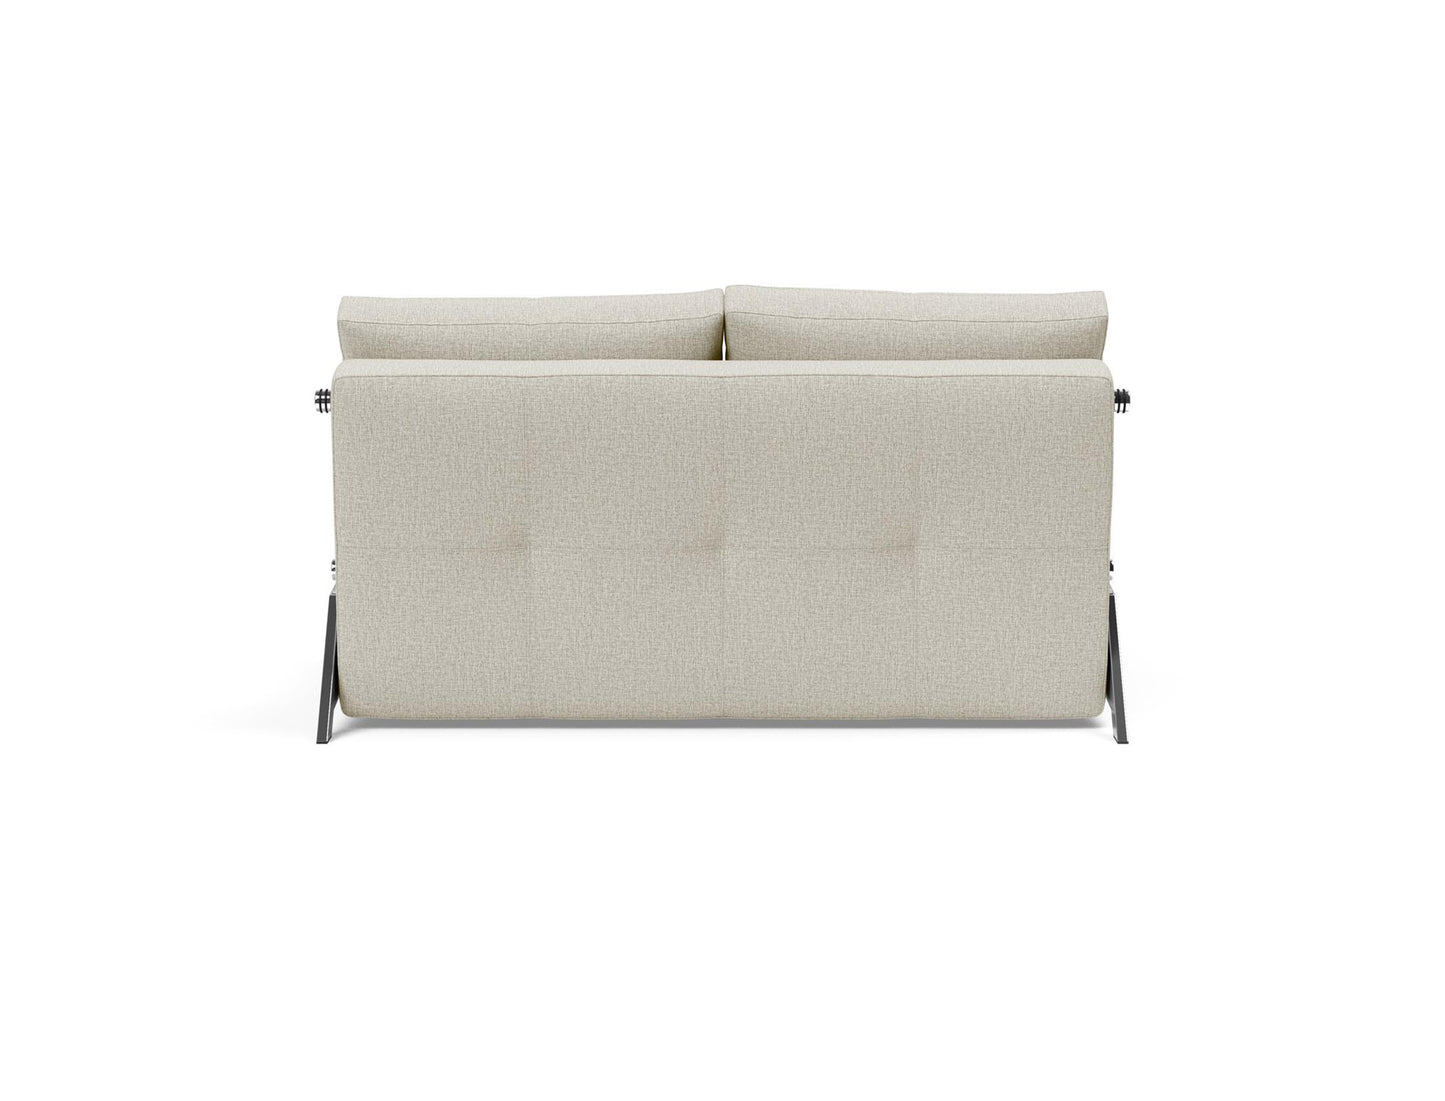 Innovation Living Cubed Full Sofa Bed Chrome Legs